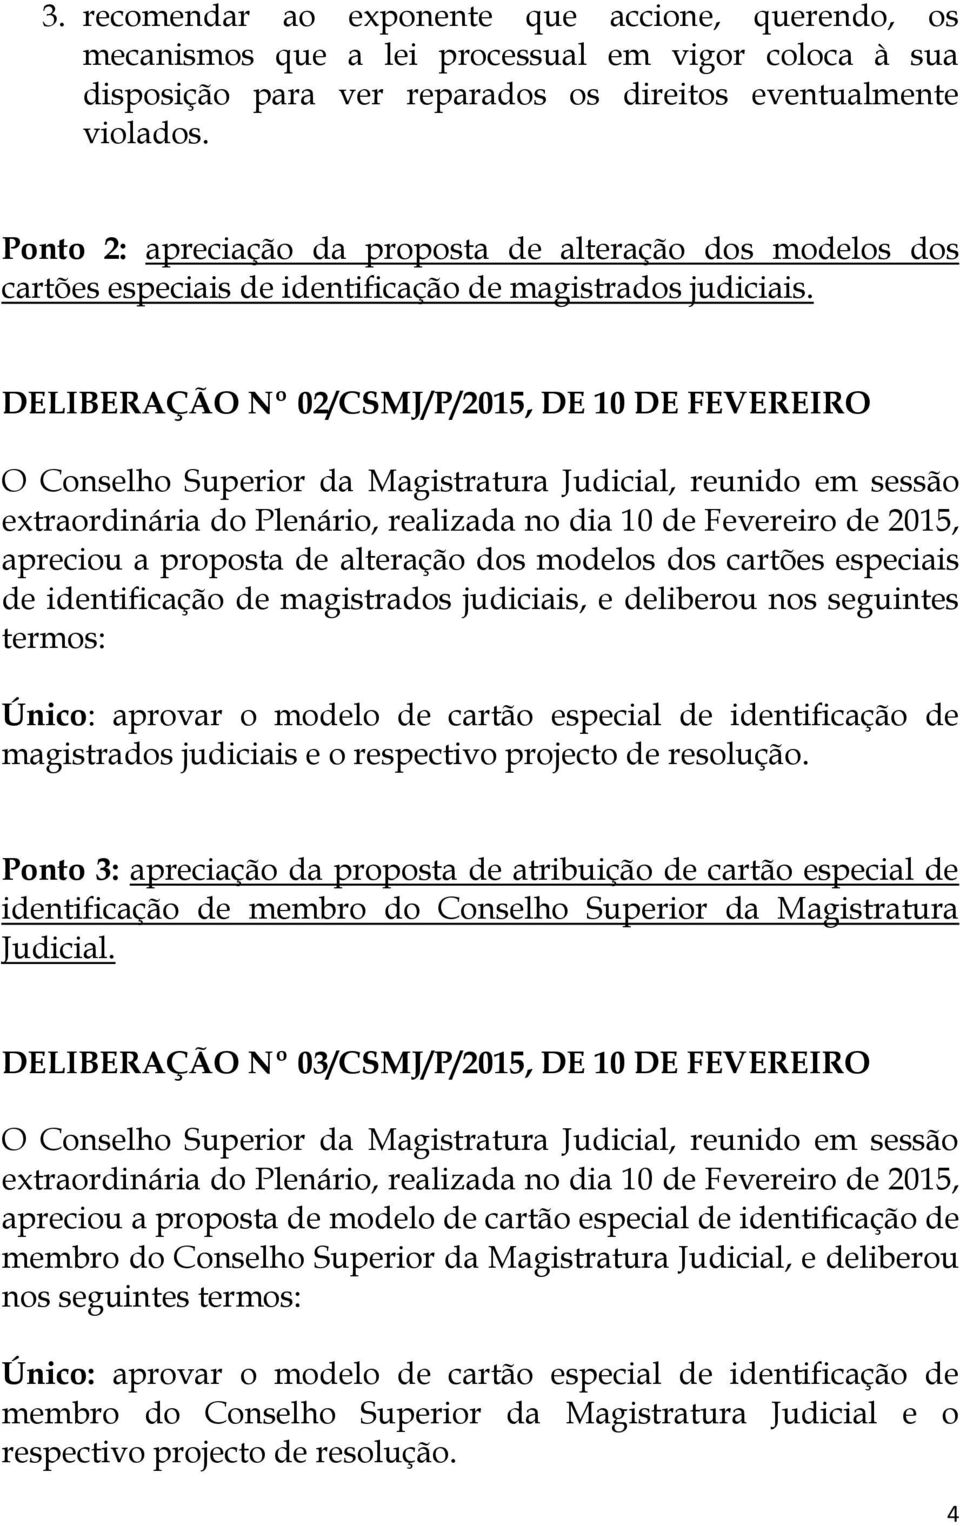 DELIBERAÇÃO Nº 02/CSMJ/P/2015, DE 10 DE FEVEREIRO apreciou a proposta de alteração dos modelos dos cartões especiais de identificação de magistrados judiciais, e deliberou nos seguintes termos: